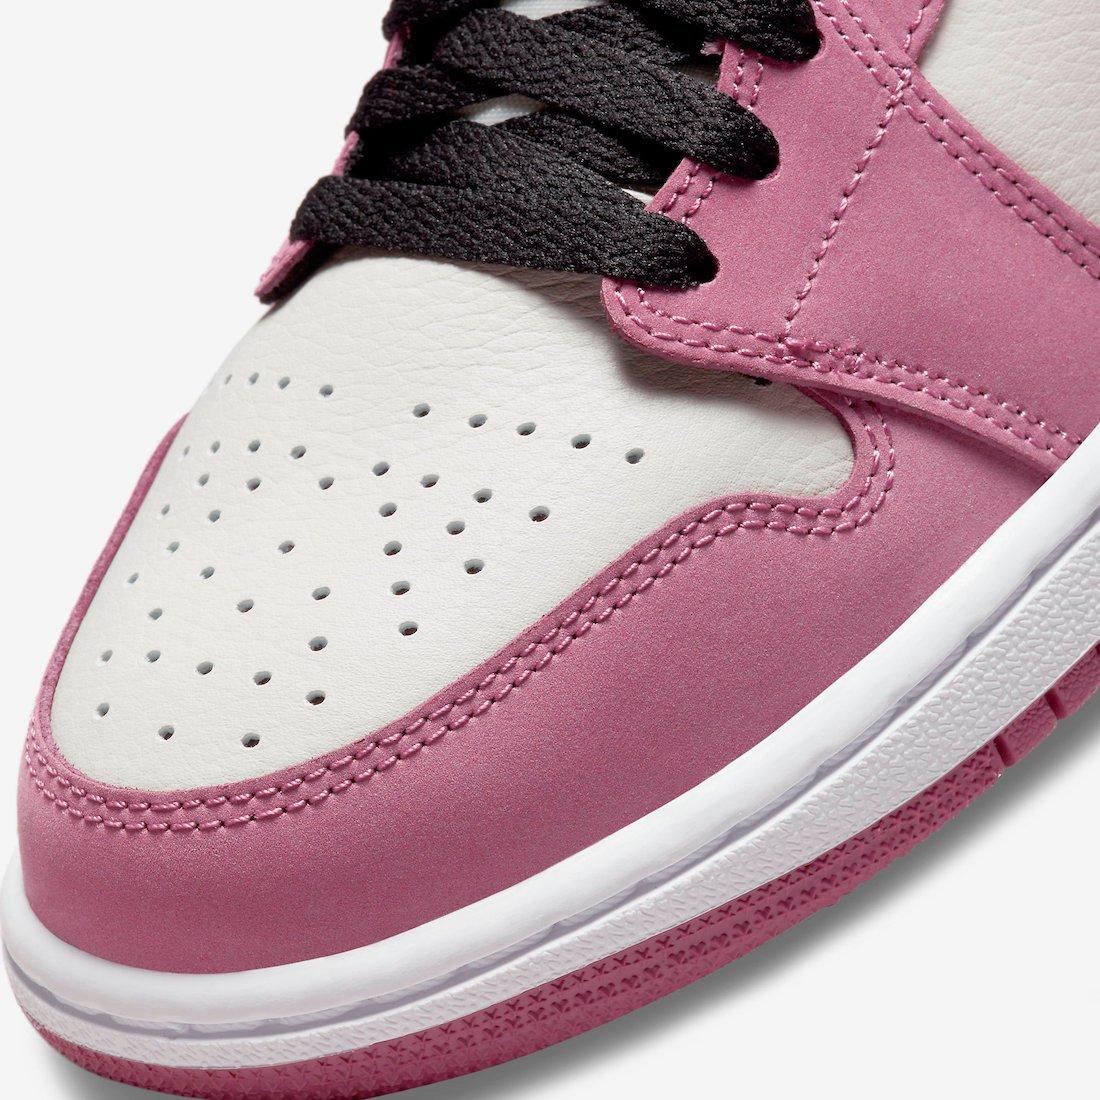 Air Jordan 1 Mid 'Berry Pink'